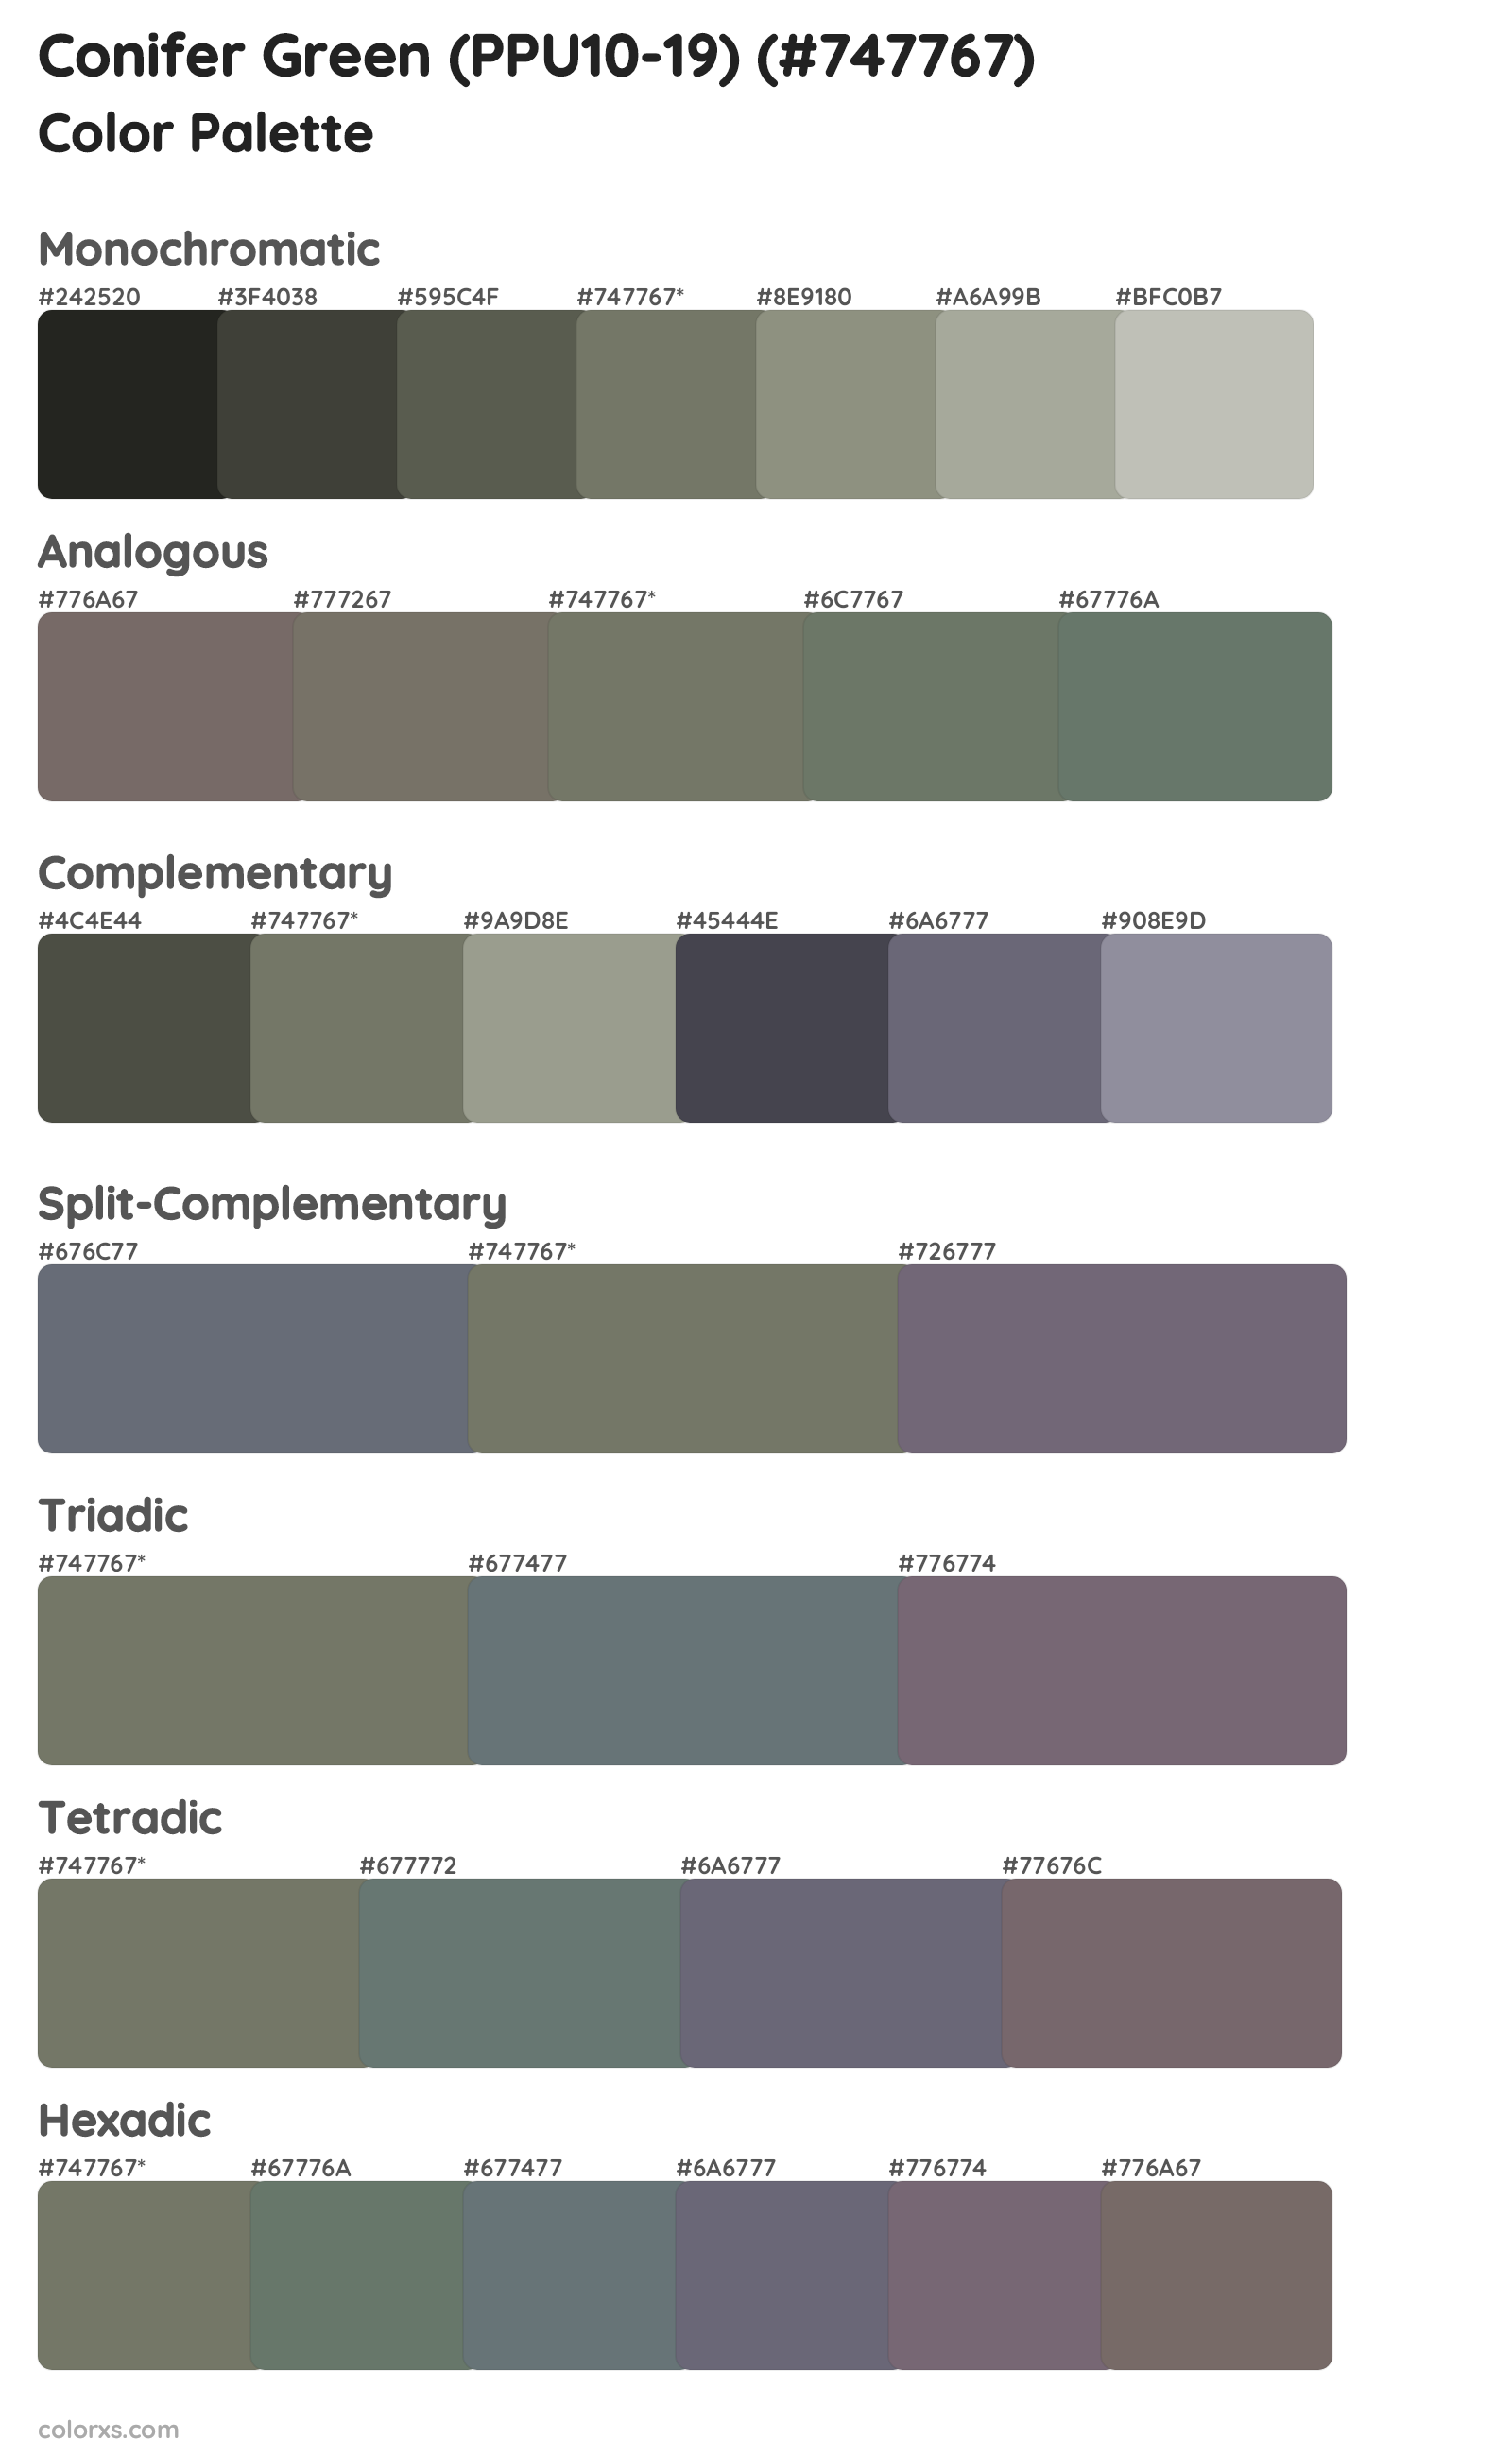 Conifer Green (PPU10-19) Color Scheme Palettes